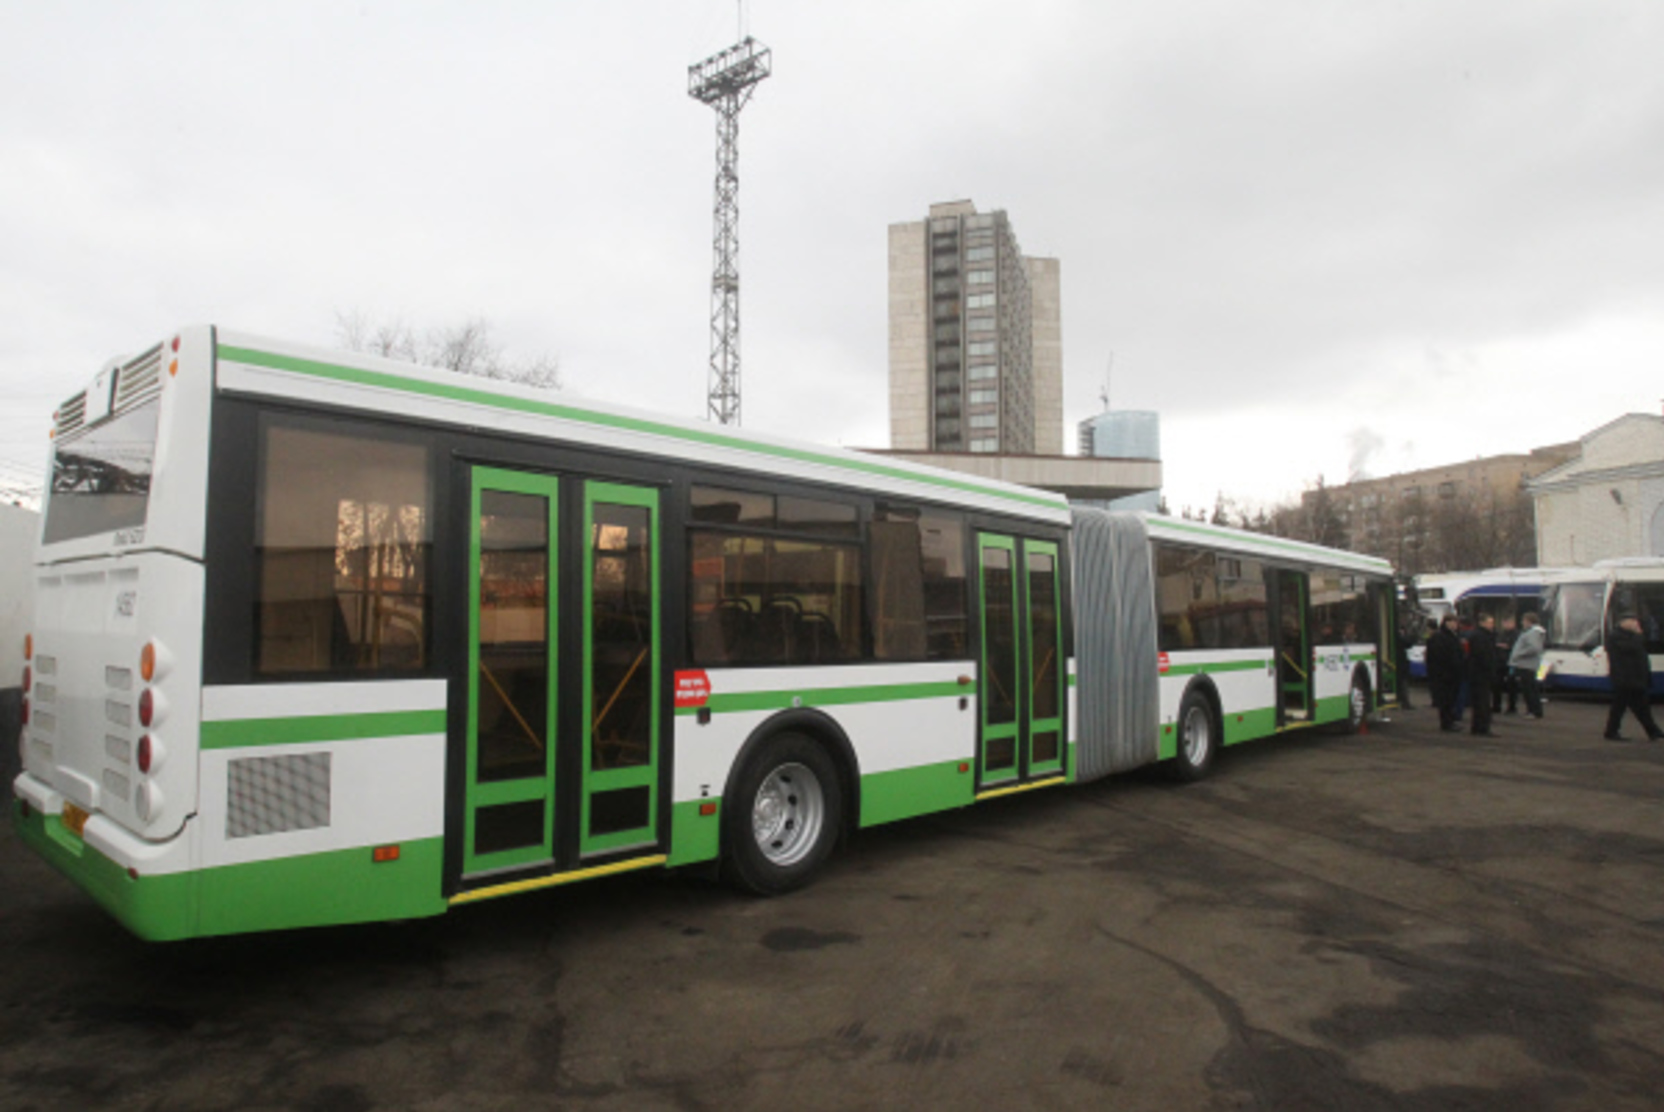 В Белгороде запустили автобусы для инфицированных коронавирусом